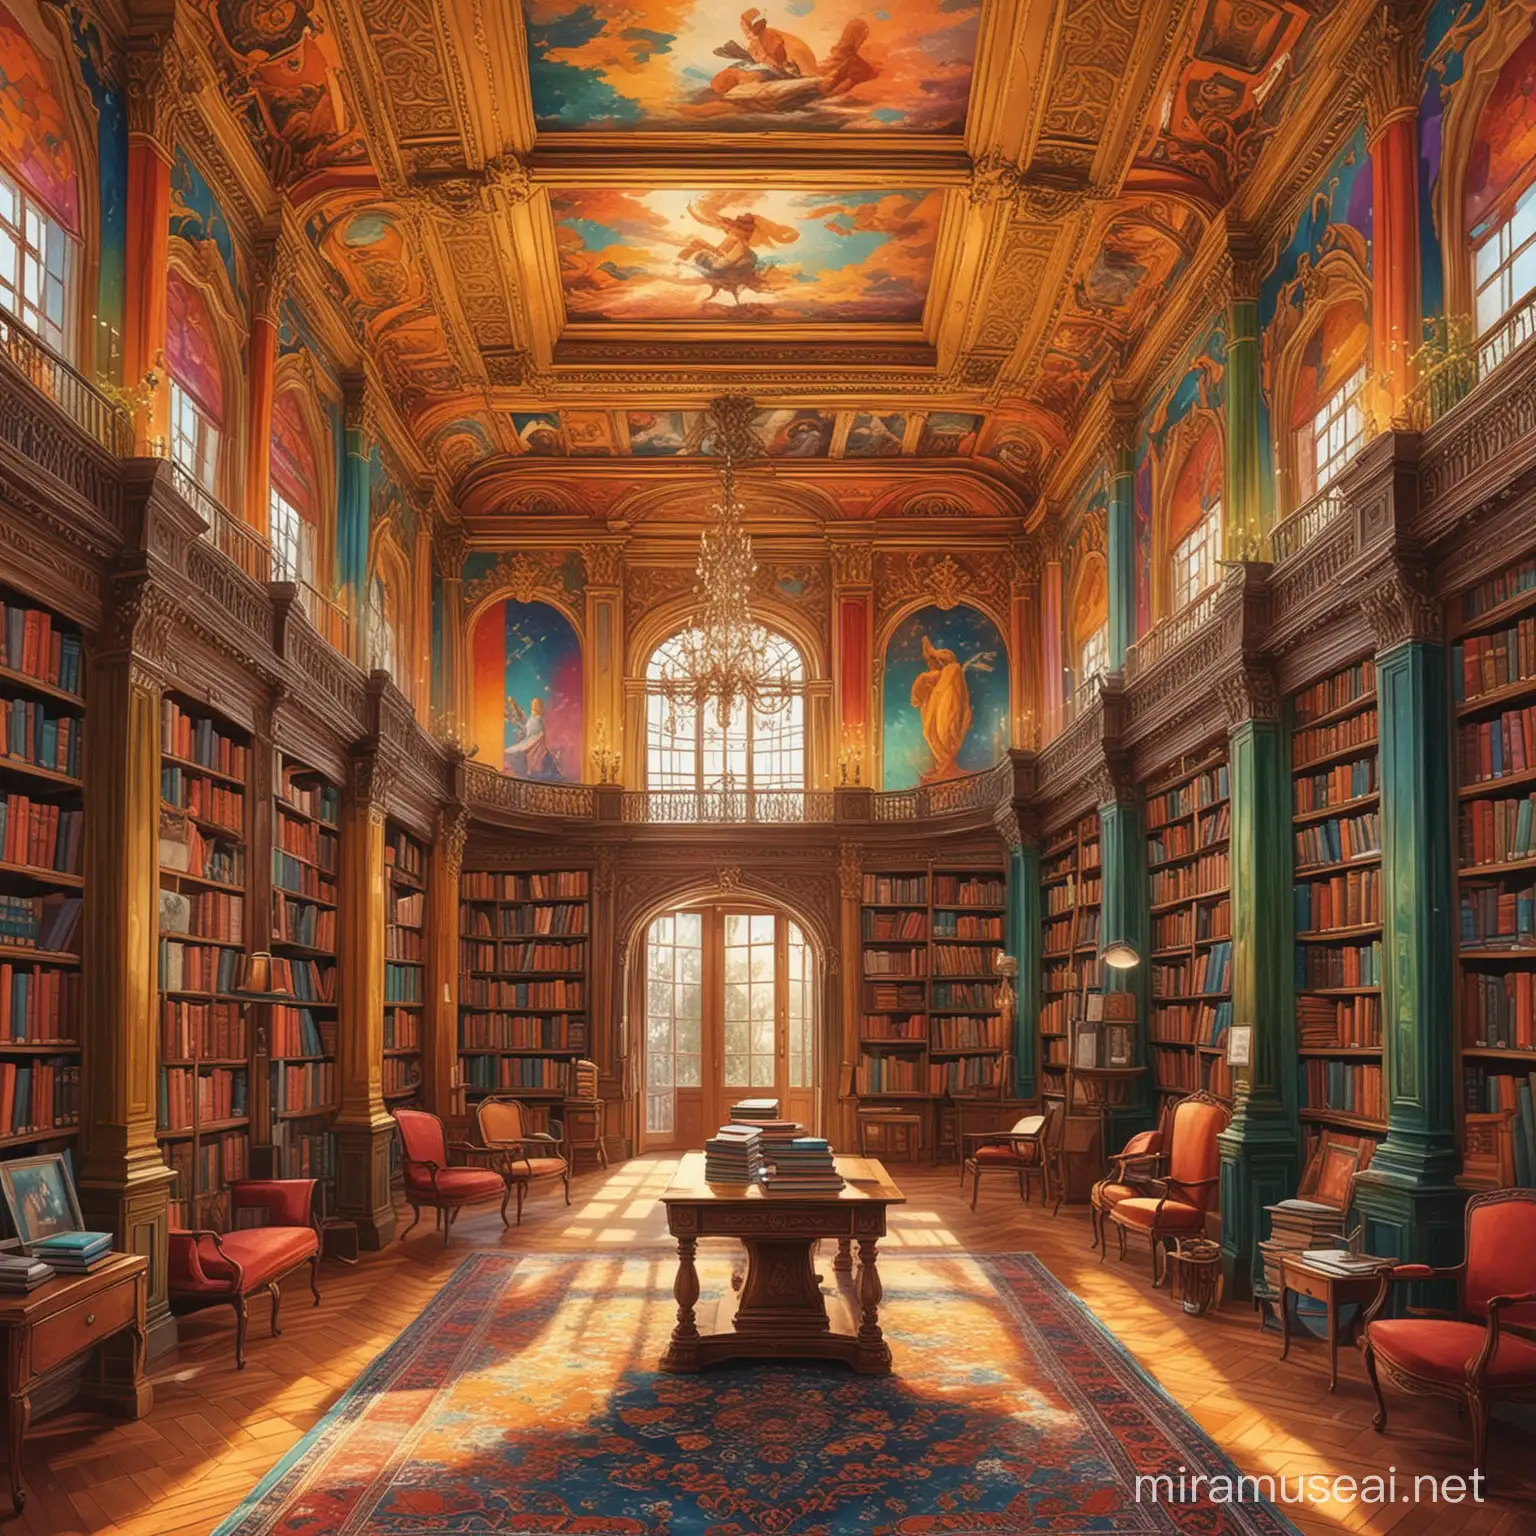 Canlı reklerin olduğu arka planın klitaplarla süslü olduğu çekici göz kamaştırıcı hoş göz yormayan bir saray kütüphanesi resmi oluştur illustratör

